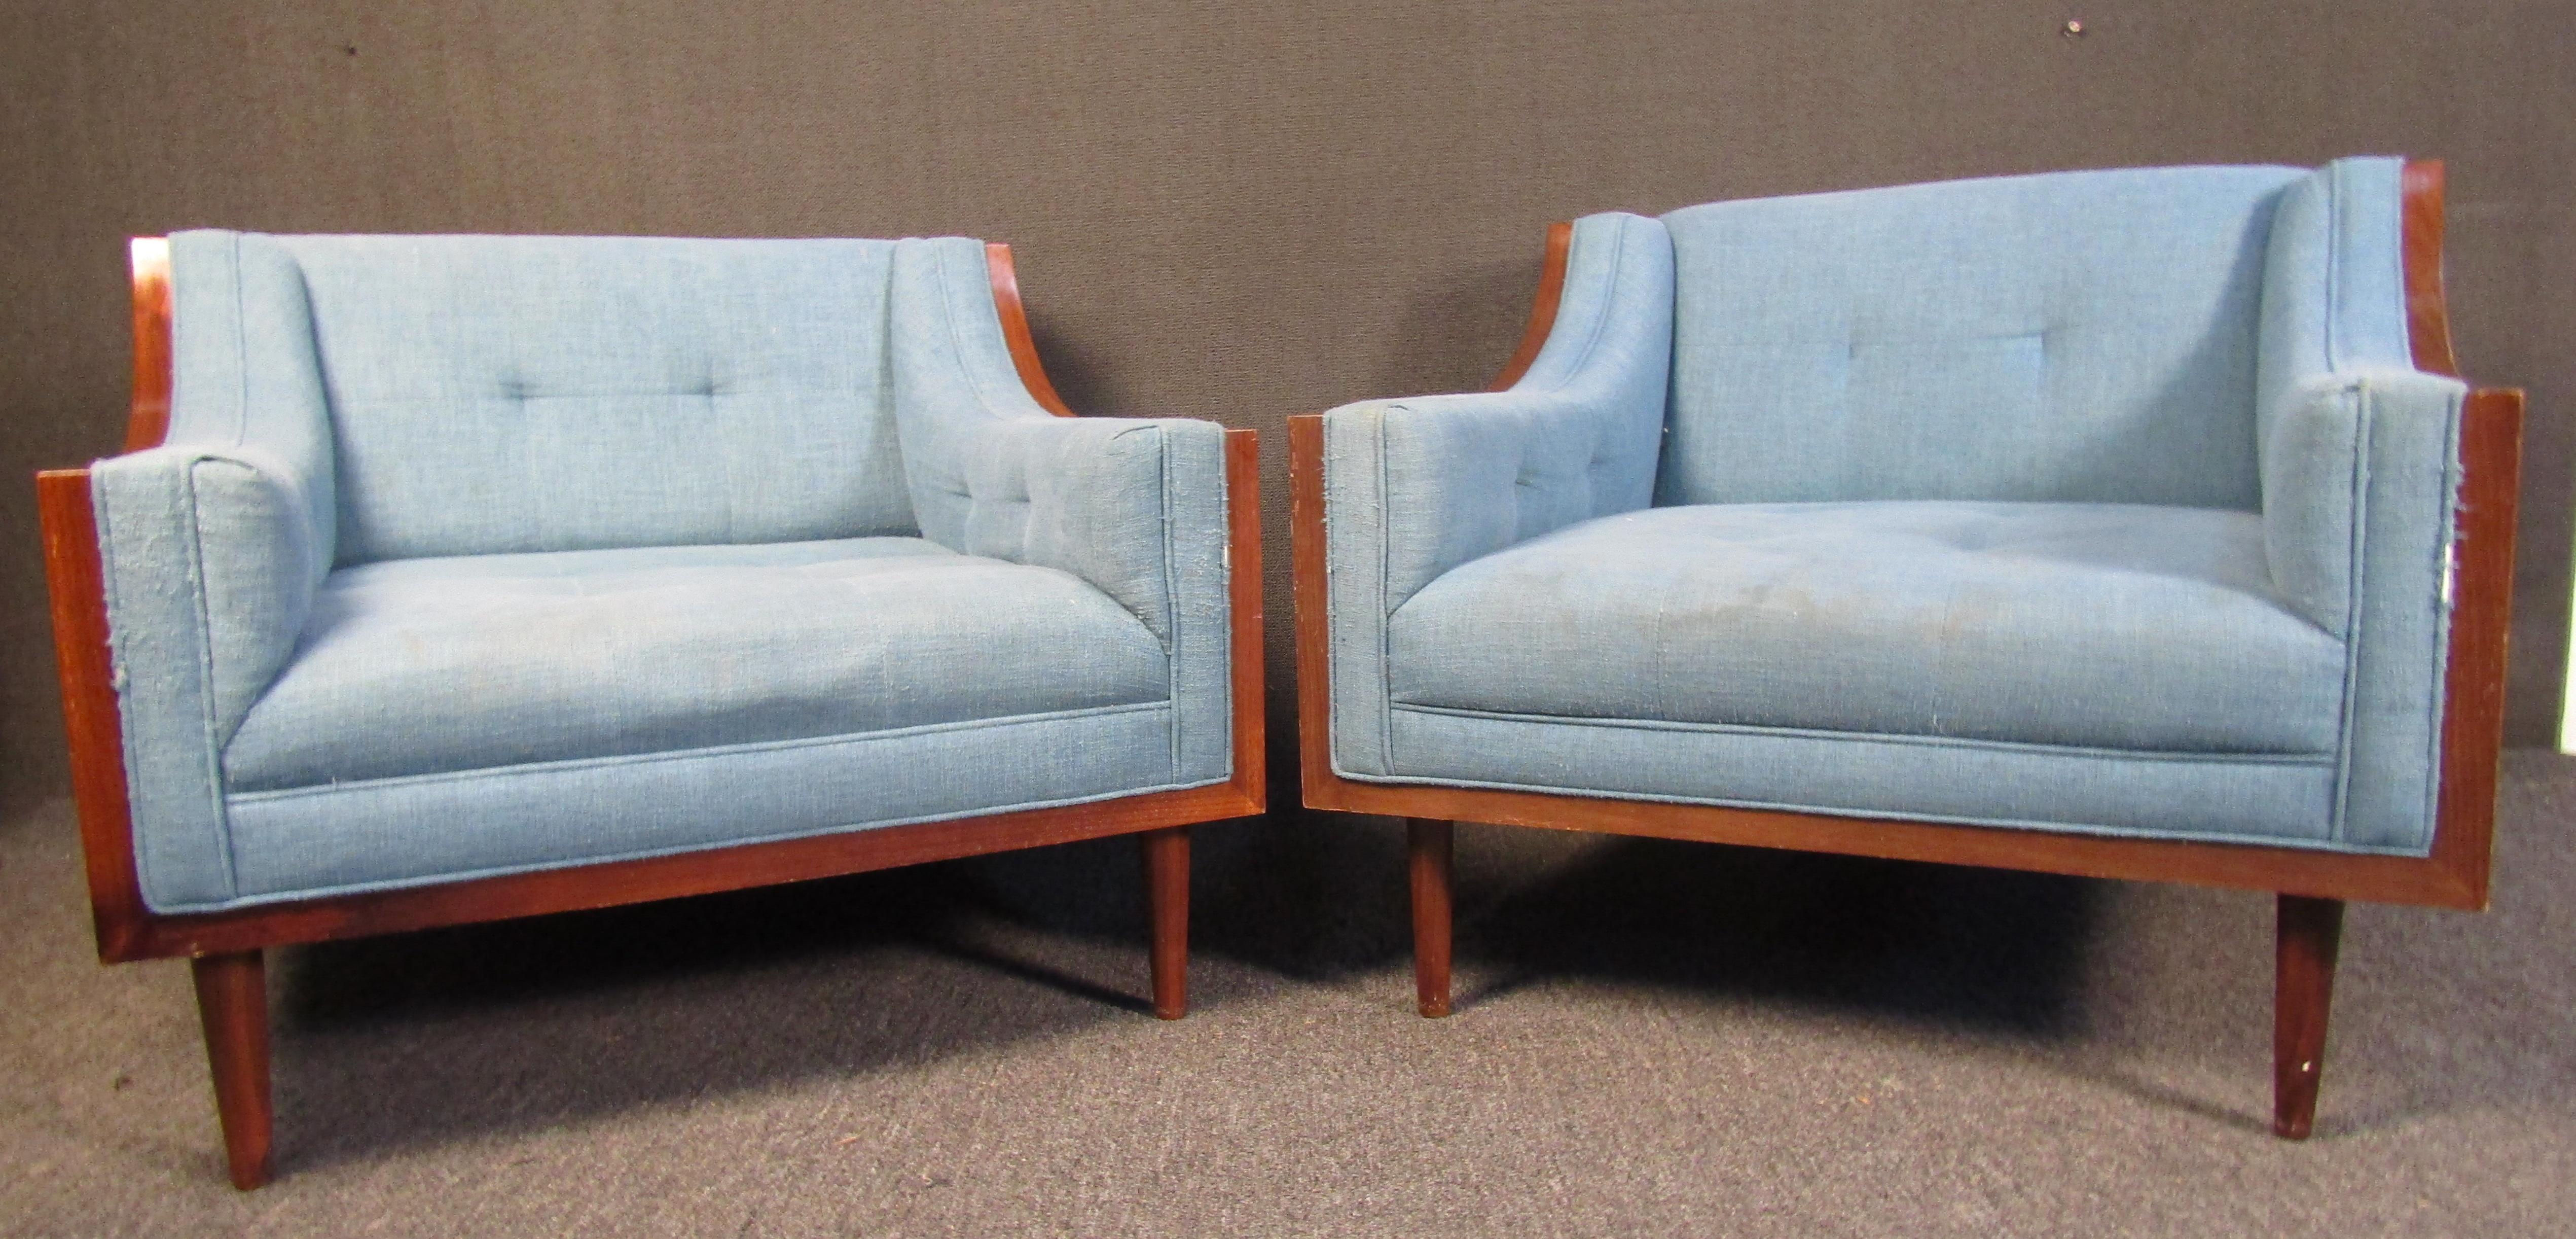 Ensemble de deux chaises longues modernes et vintage. Les chaises sont tapissées d'un tissu bleu layette clair, enchâssées dans des coques en noyer aux couleurs riches et profondes, sur des pieds effilés. Ces fauteuils de salon à l'allure élégante